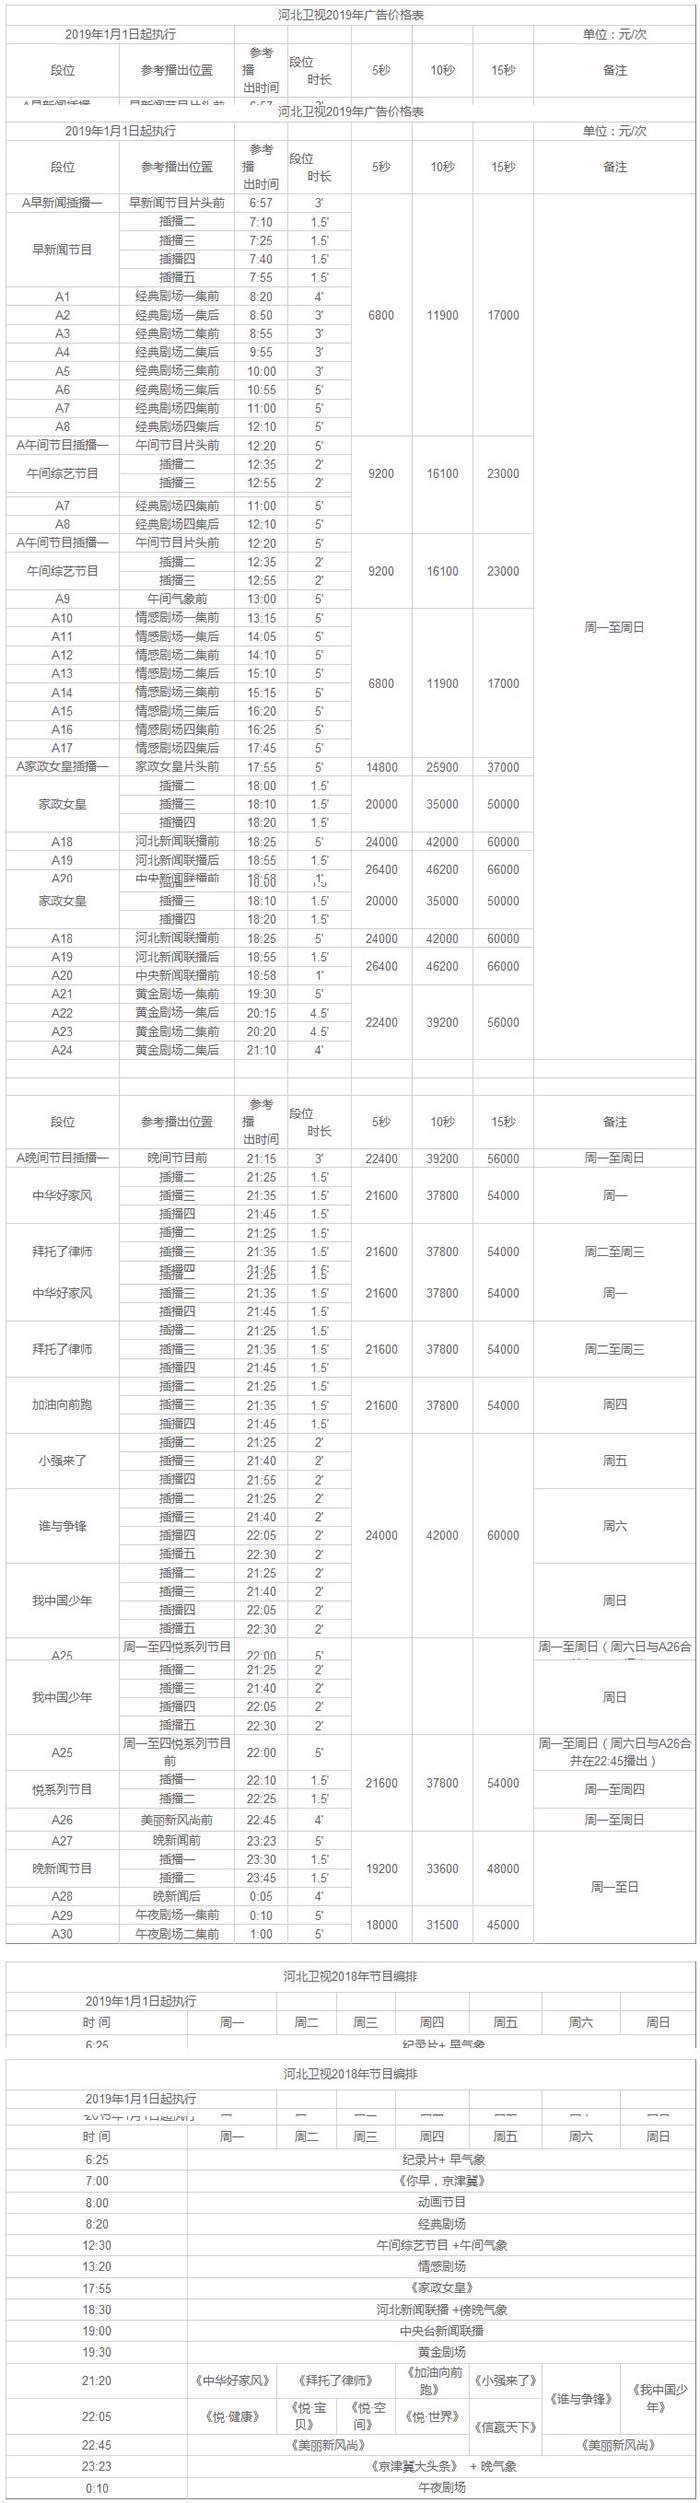 河北卫视2019年最新广告价格